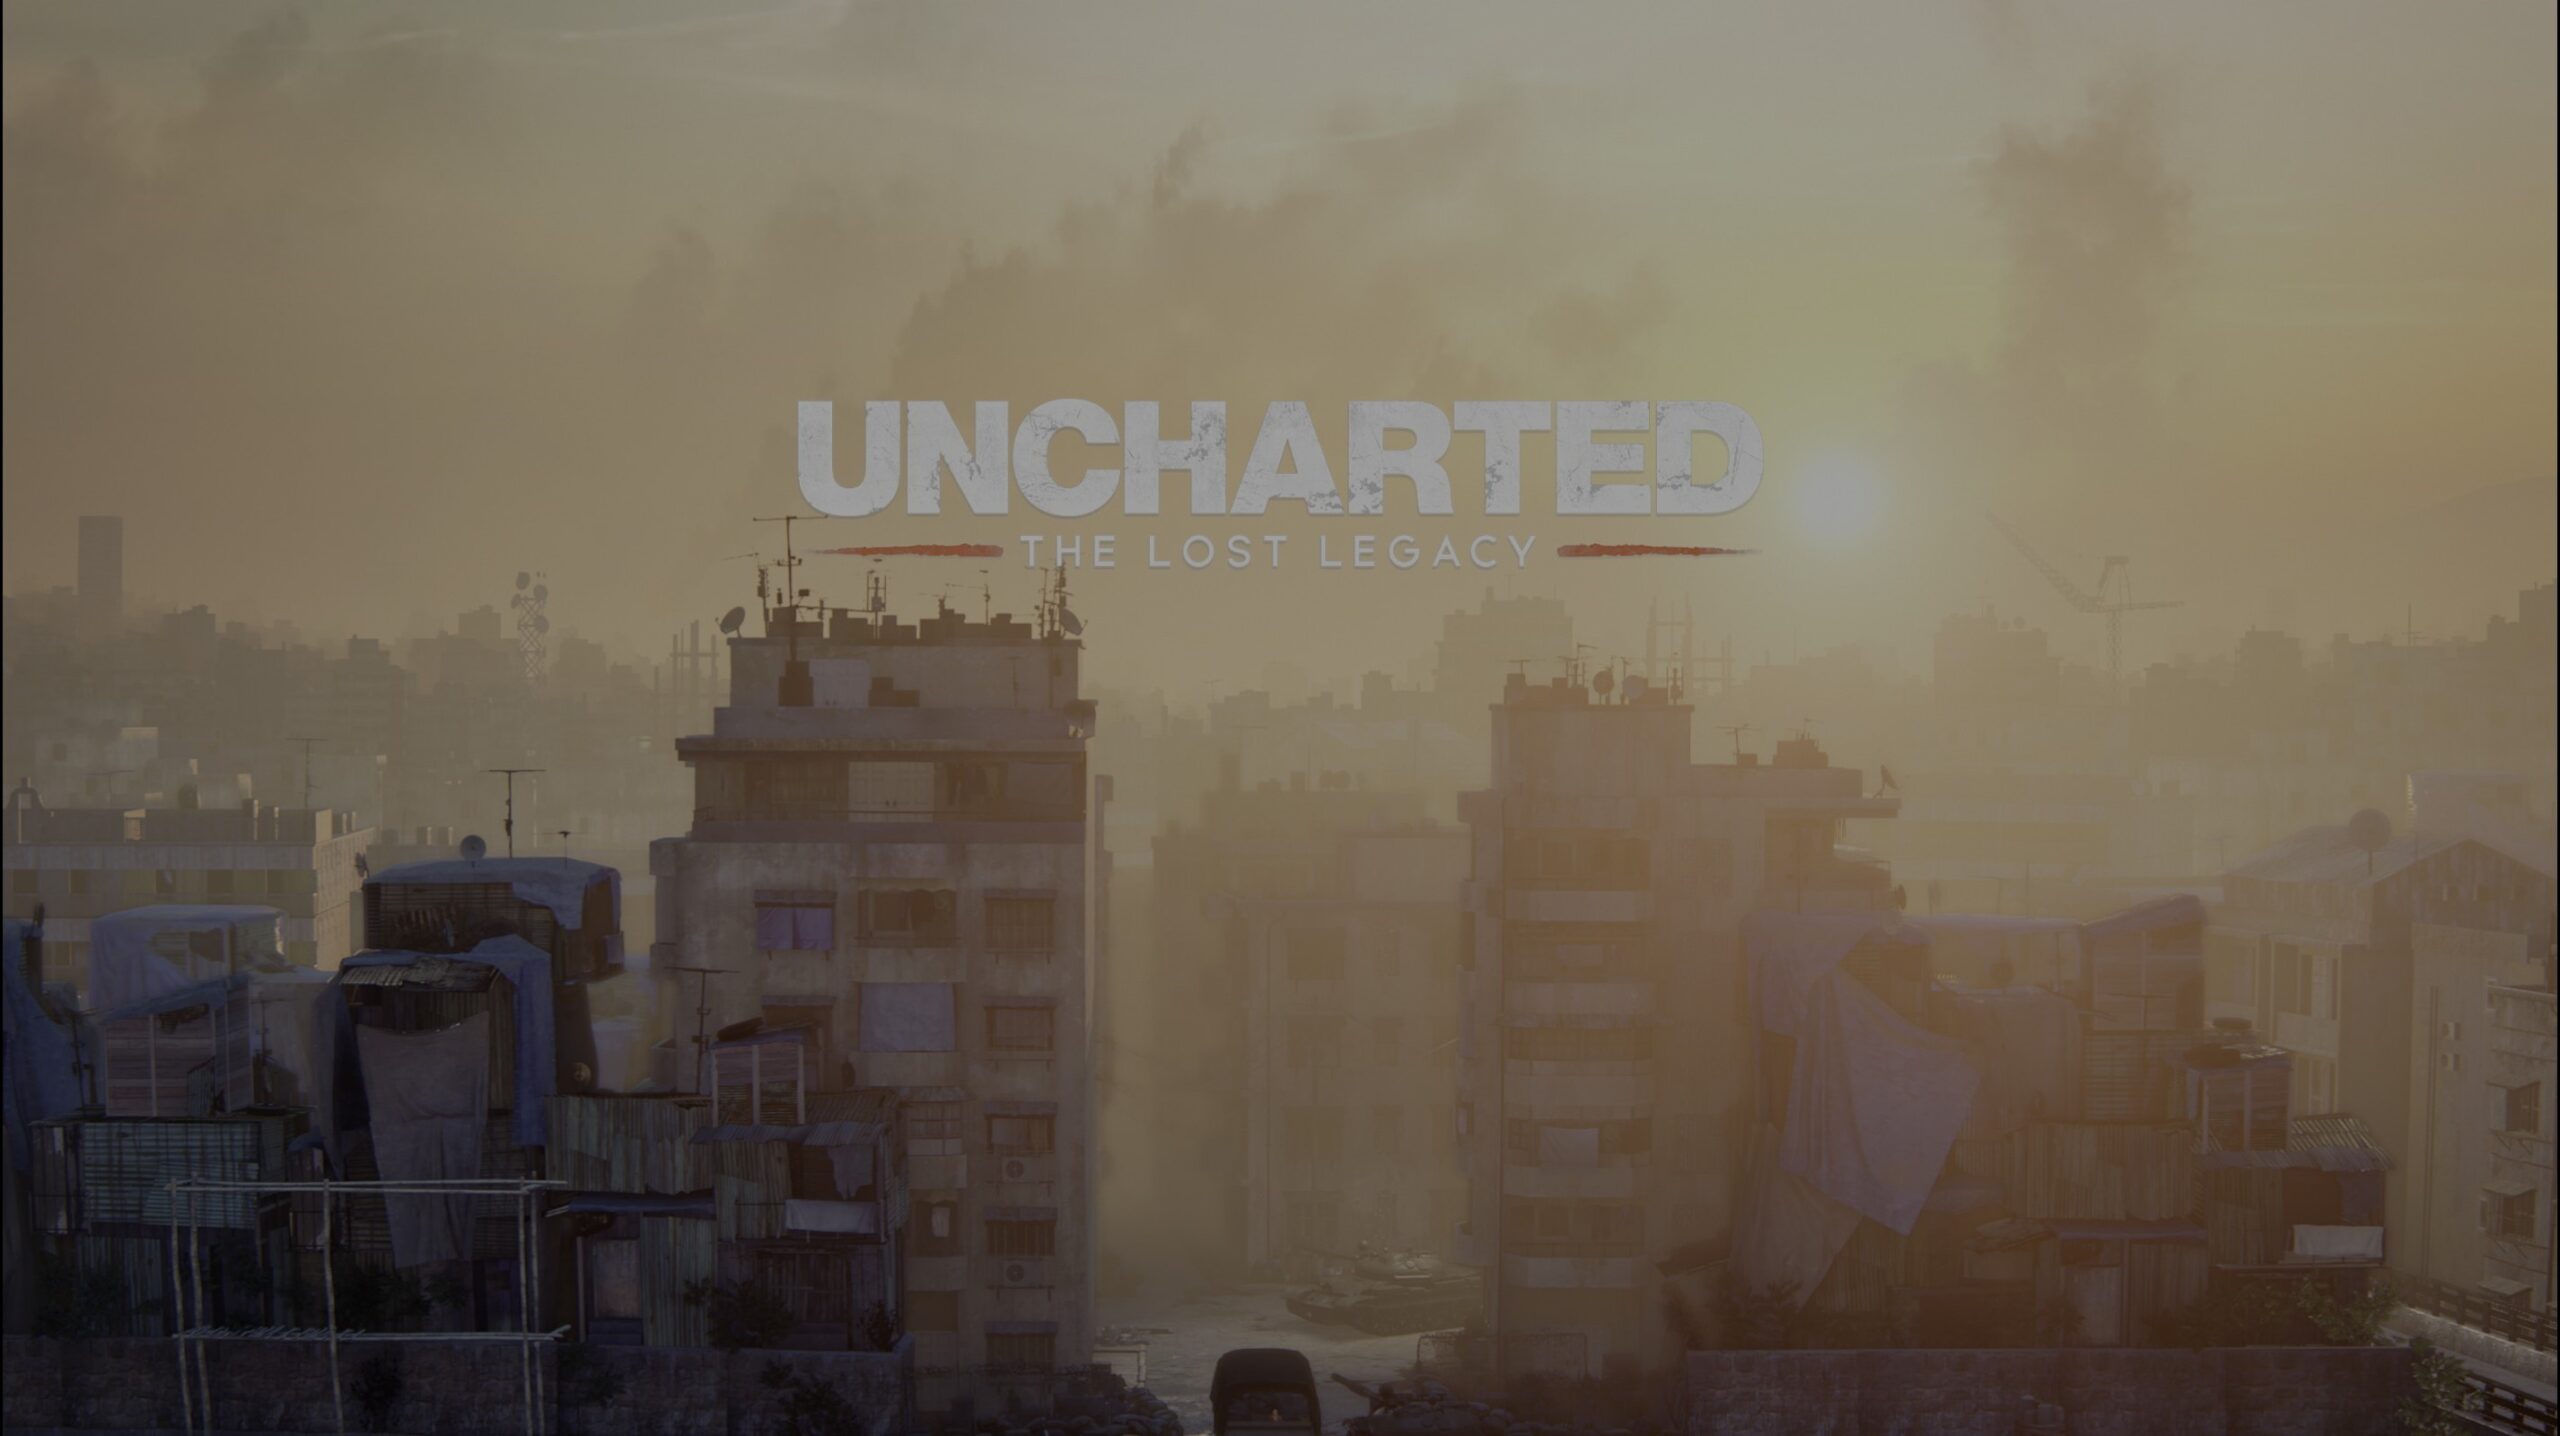 Análisis Uncharted: Colección Legado de los Ladrones para PC - La